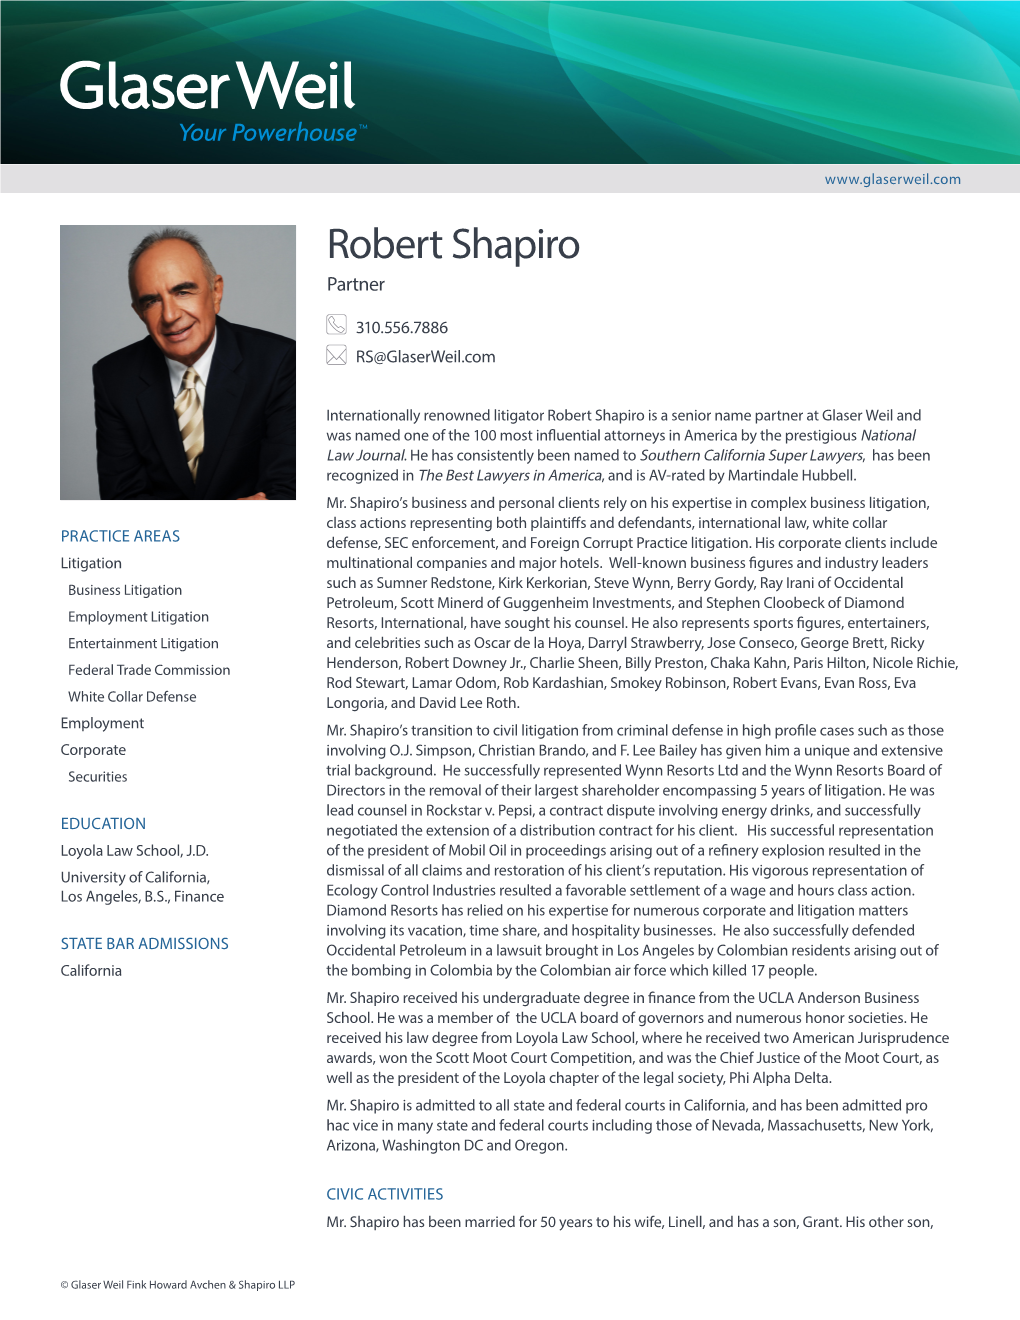 Robert Shapiro Partner